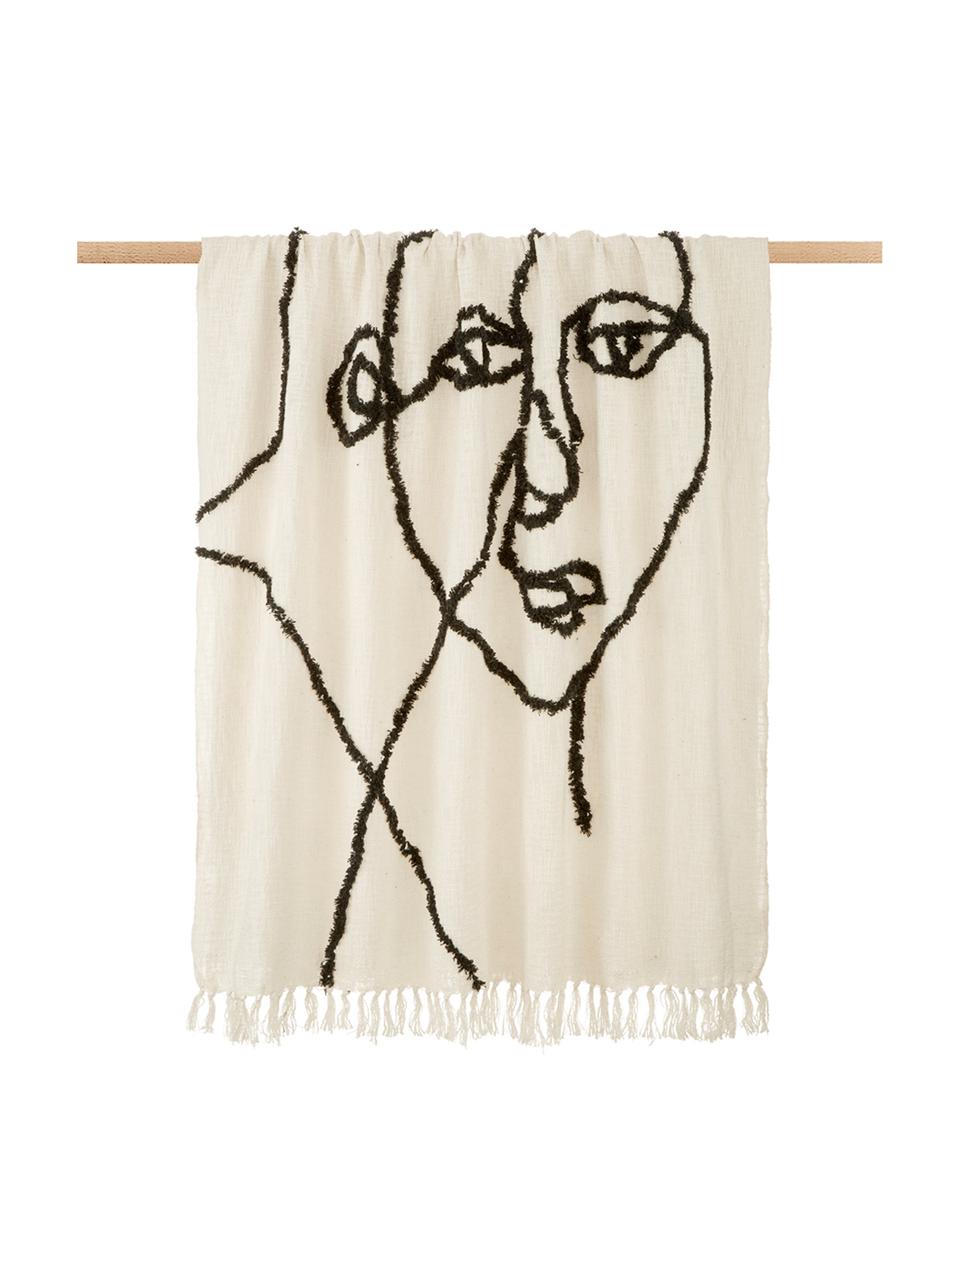 Přikrývka s abstraktní kresbou Face, 100 % bavlna, Slonová kost, černá, Š 130 cm, D 170 cm